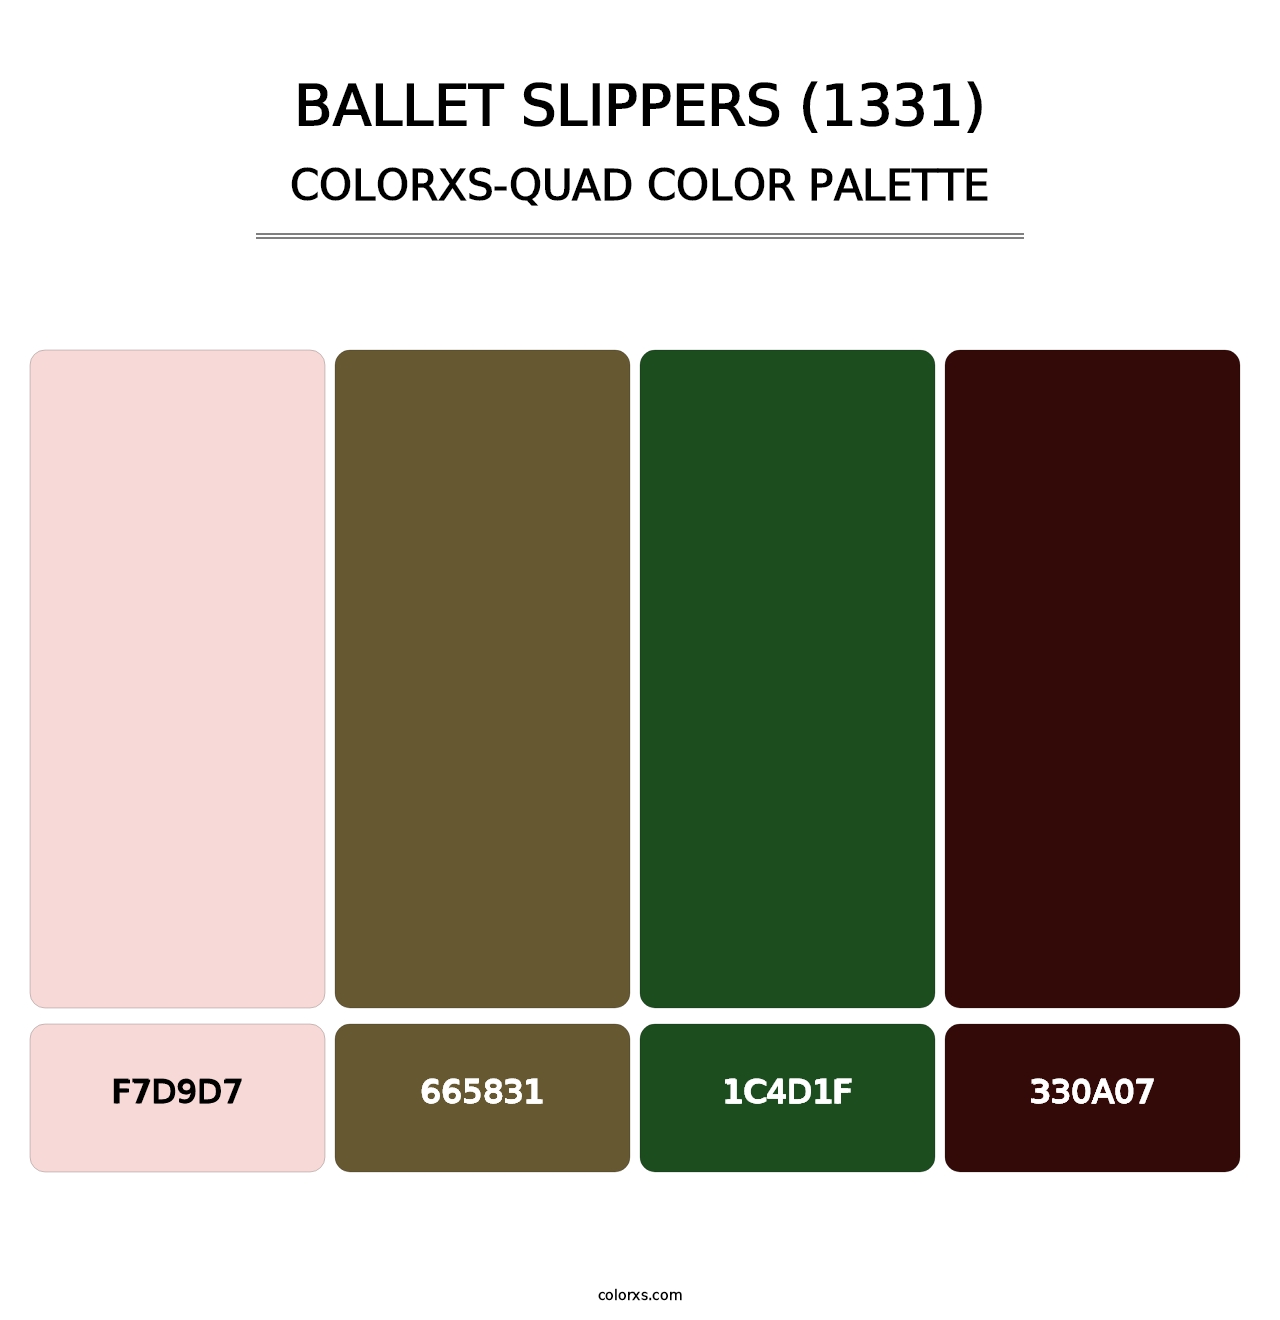 Ballet Slippers (1331) - Colorxs Quad Palette